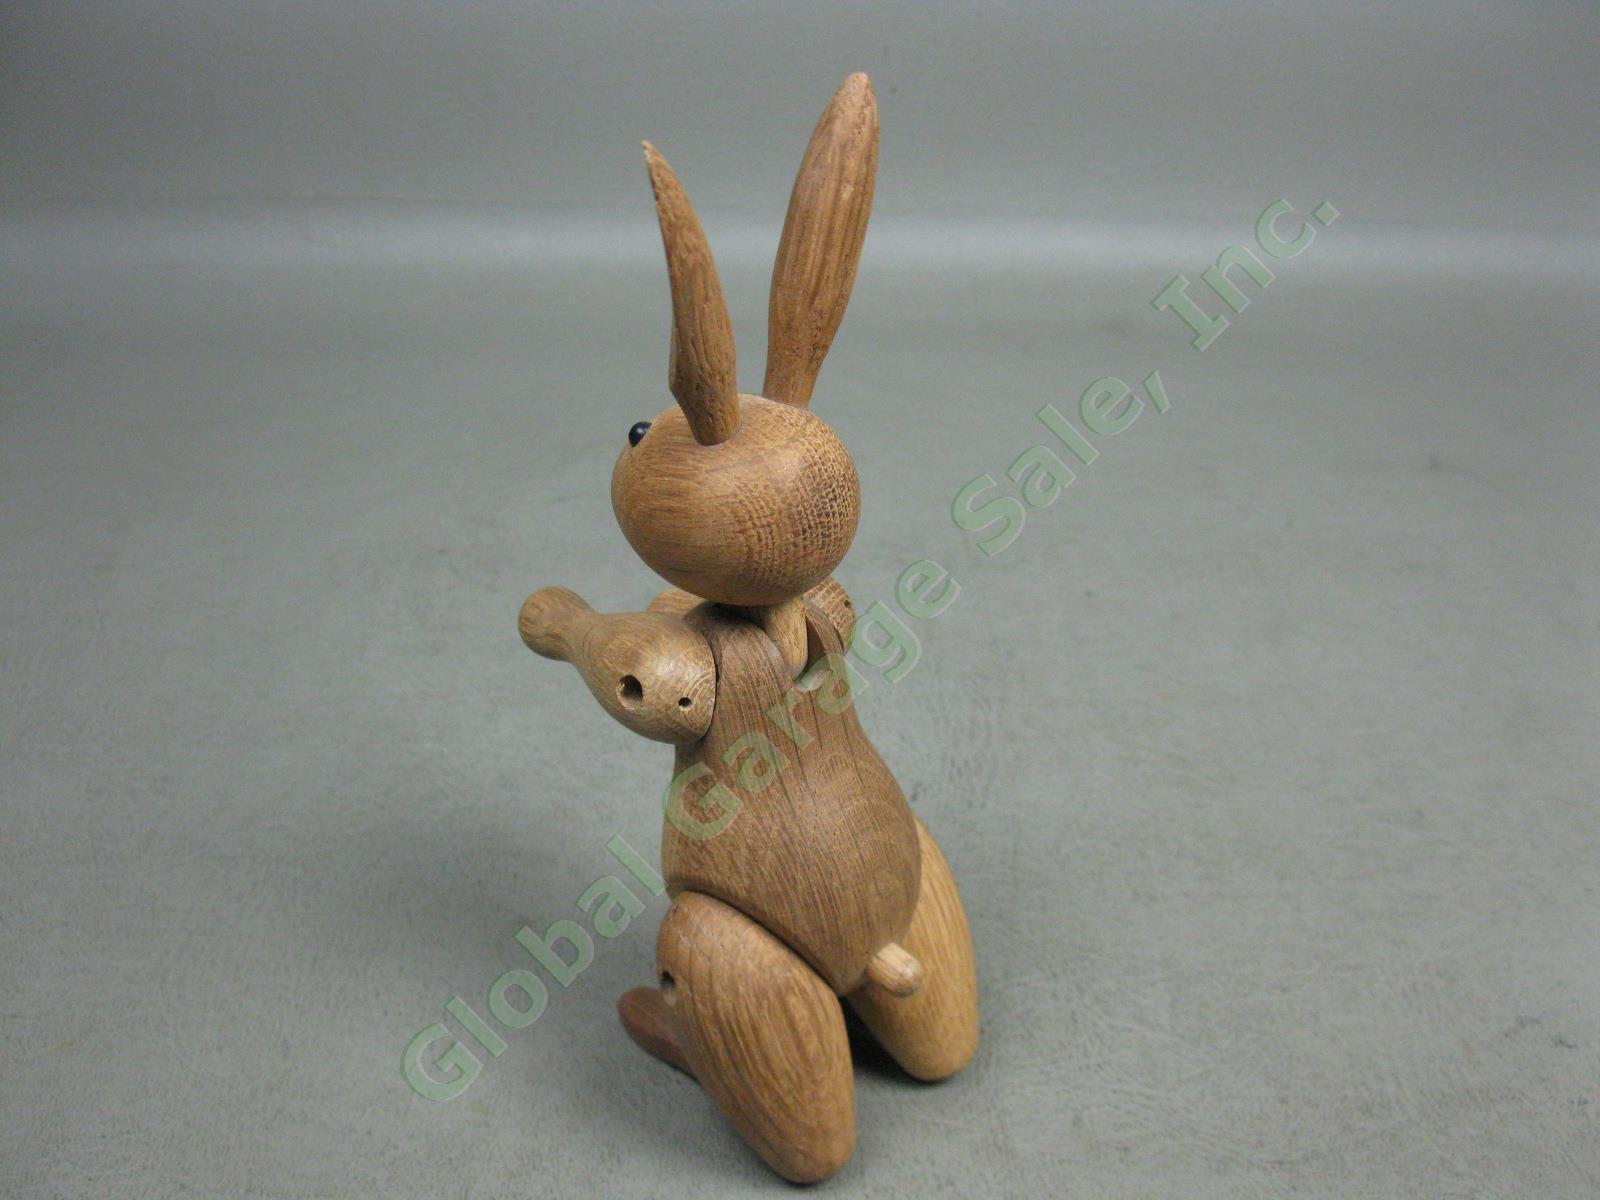 Vtg MCM Kay Bojesen Signed Jointed Danish Teak Wood Wooden Rabbit Toy Denmark NR 4